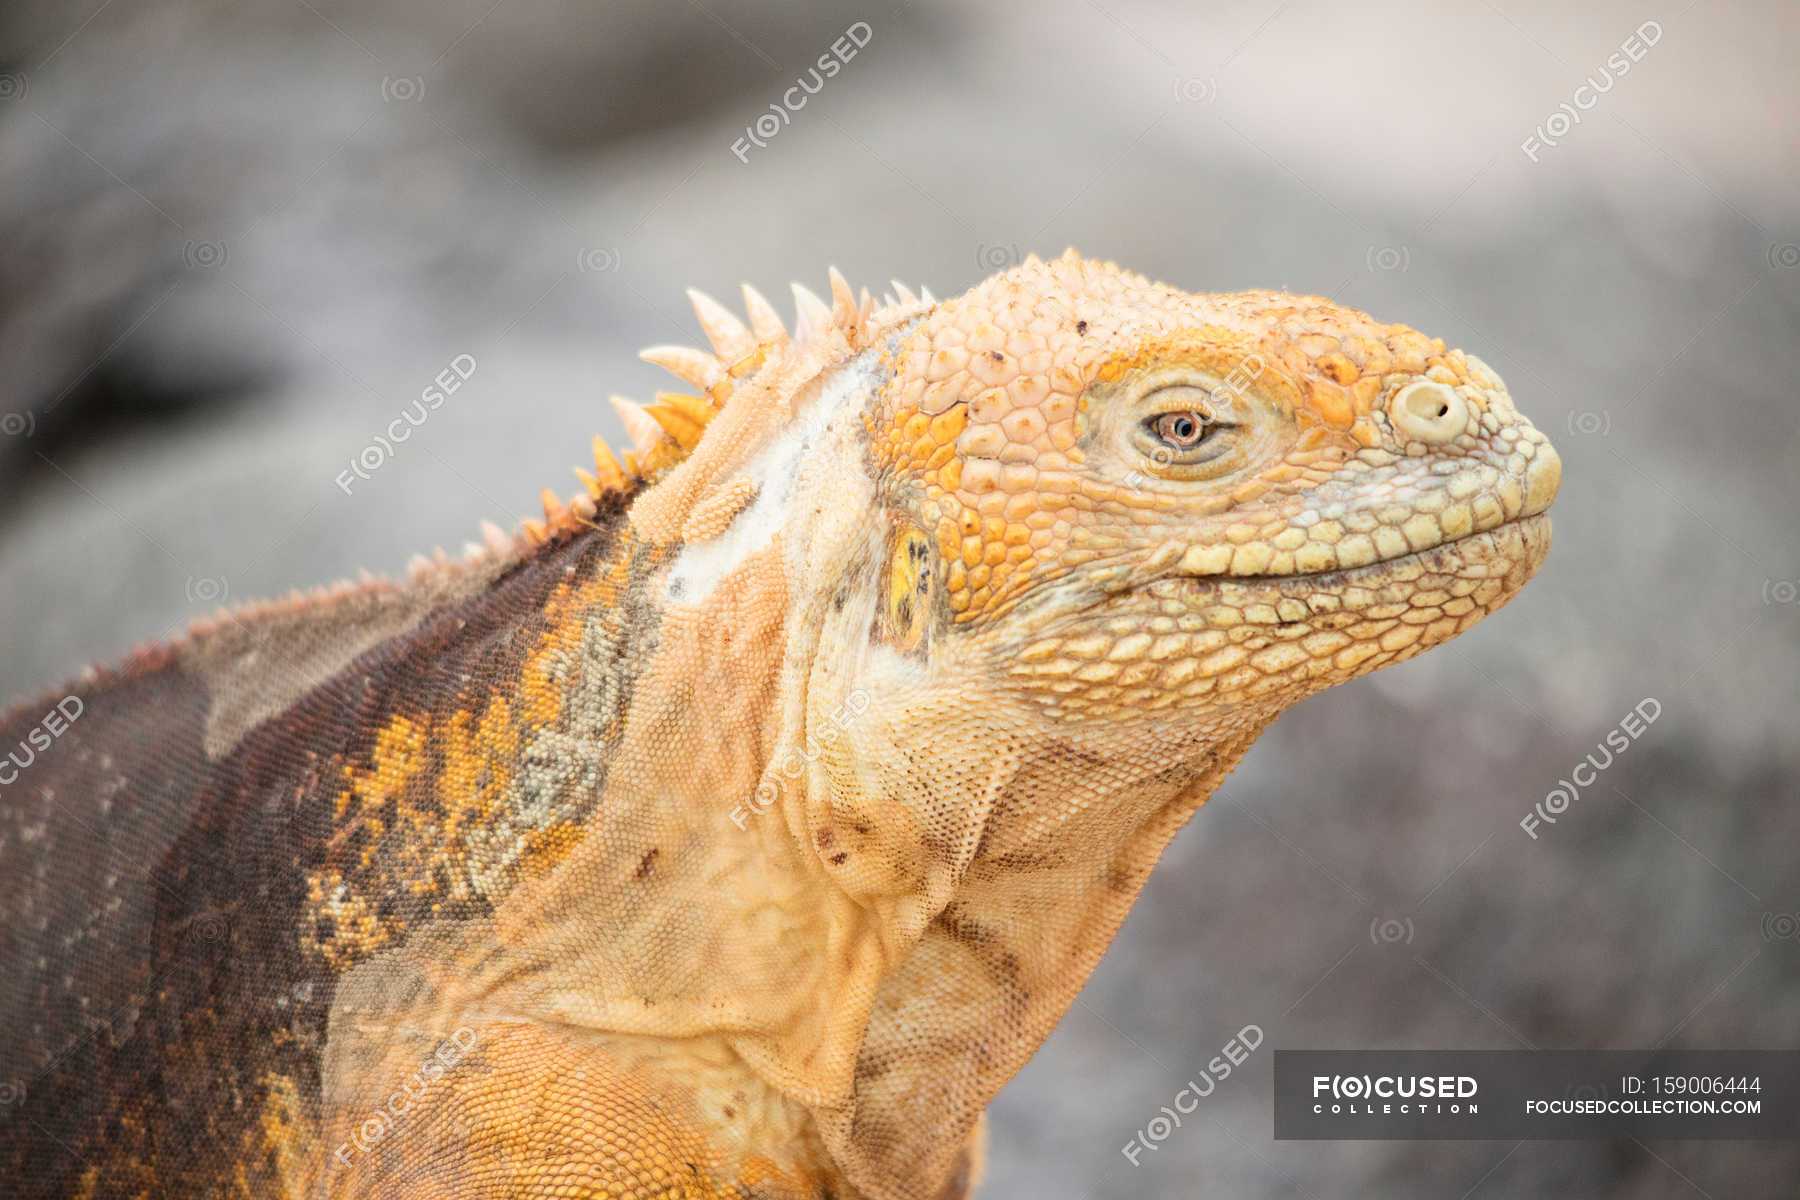 Wild iguana in nature — Stock Photo | #159006444